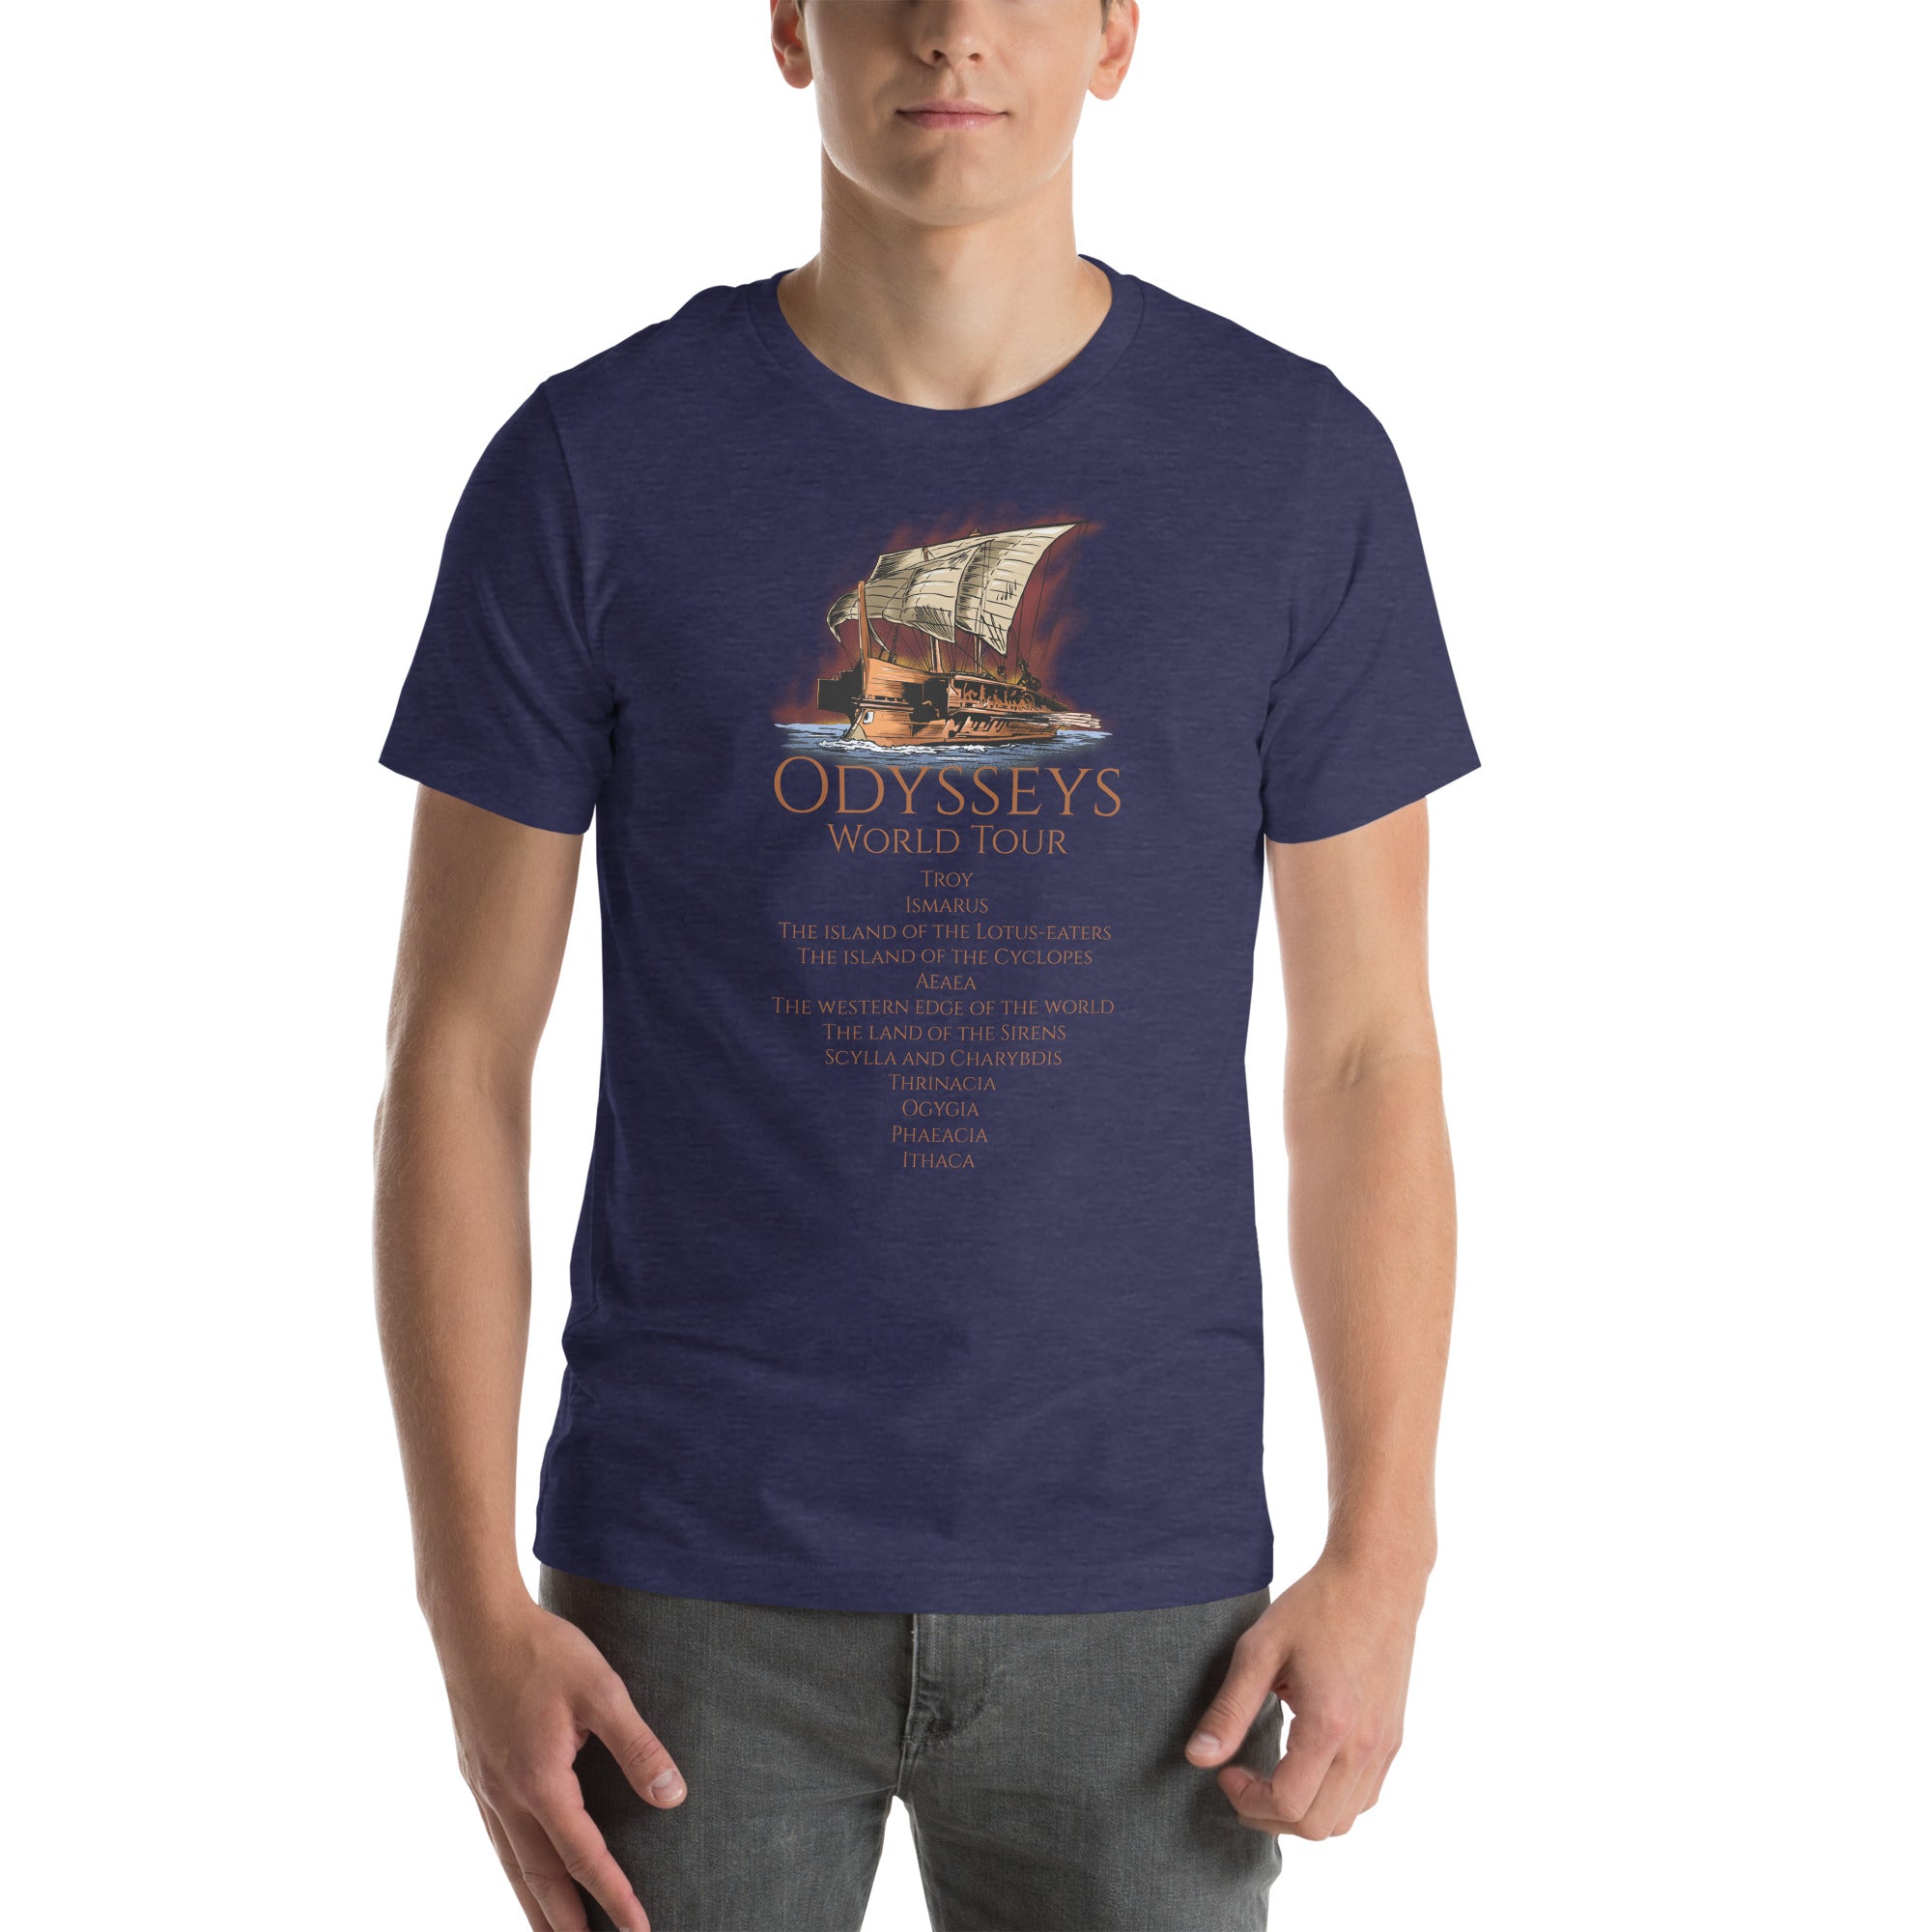 Greek mythology shirt